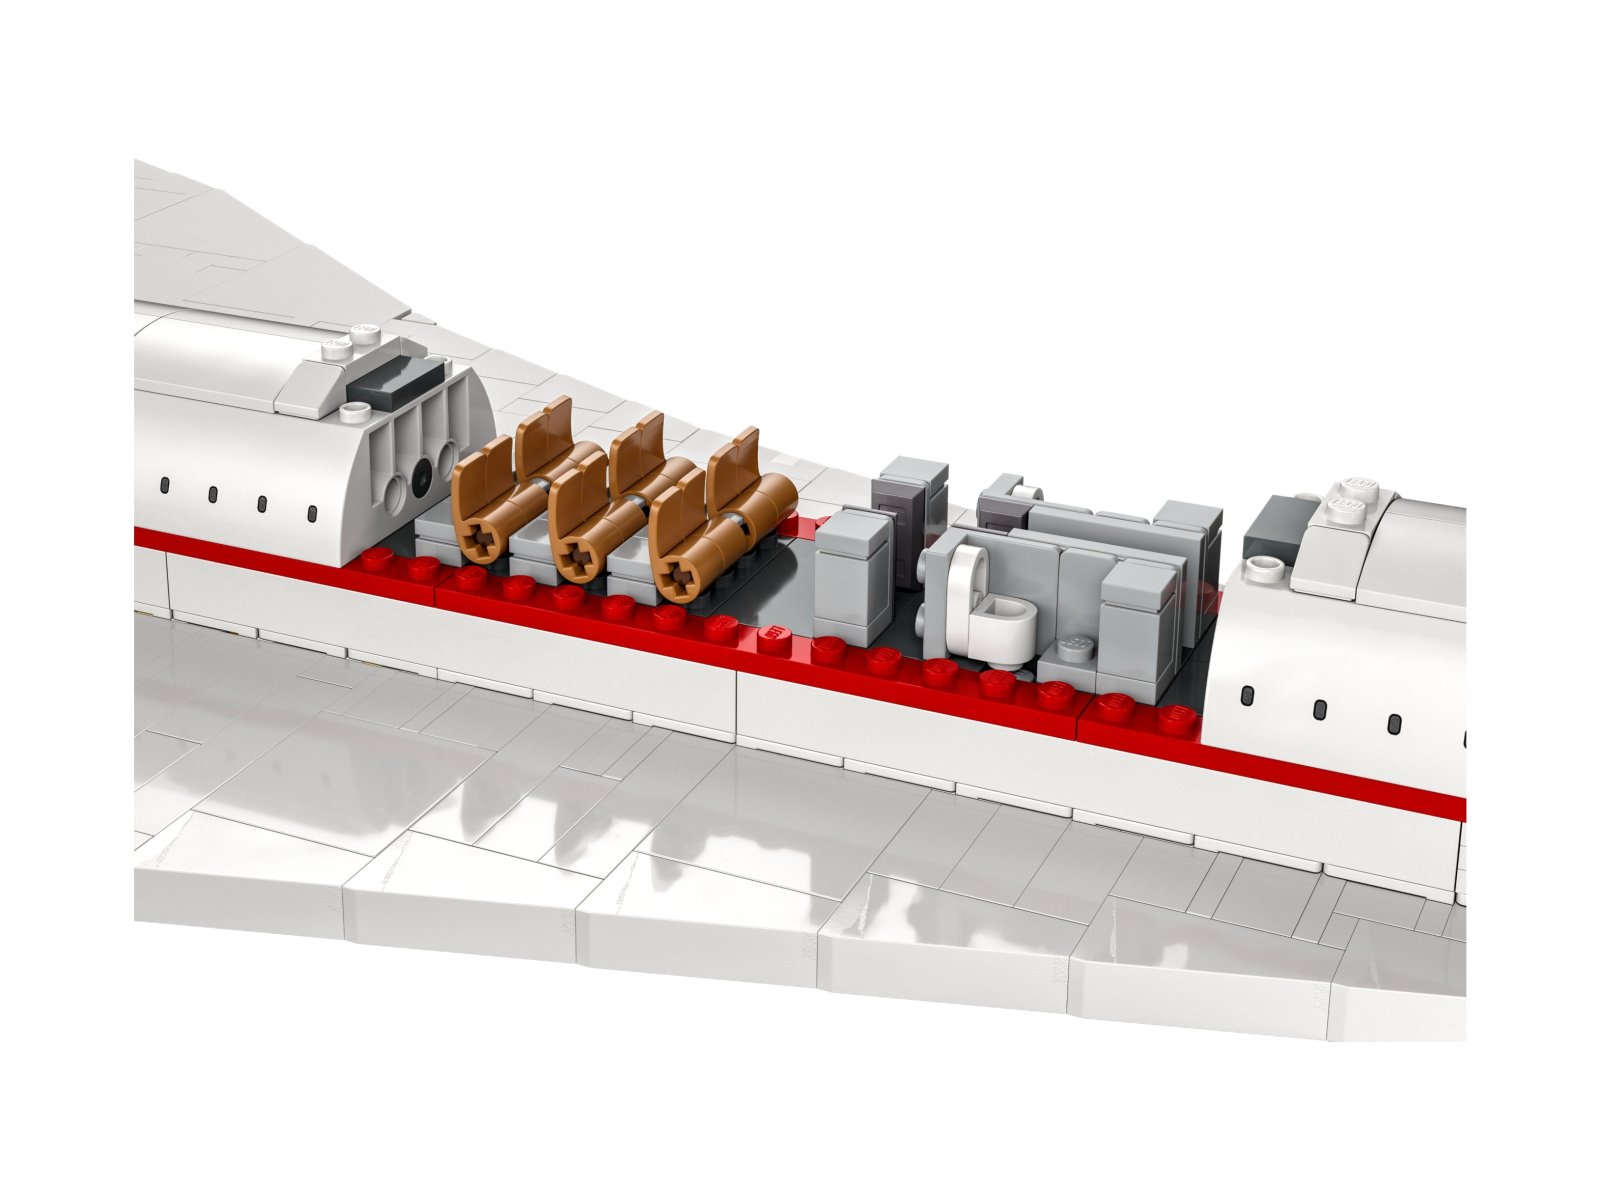 LEGO ICONS 10318 Concorde